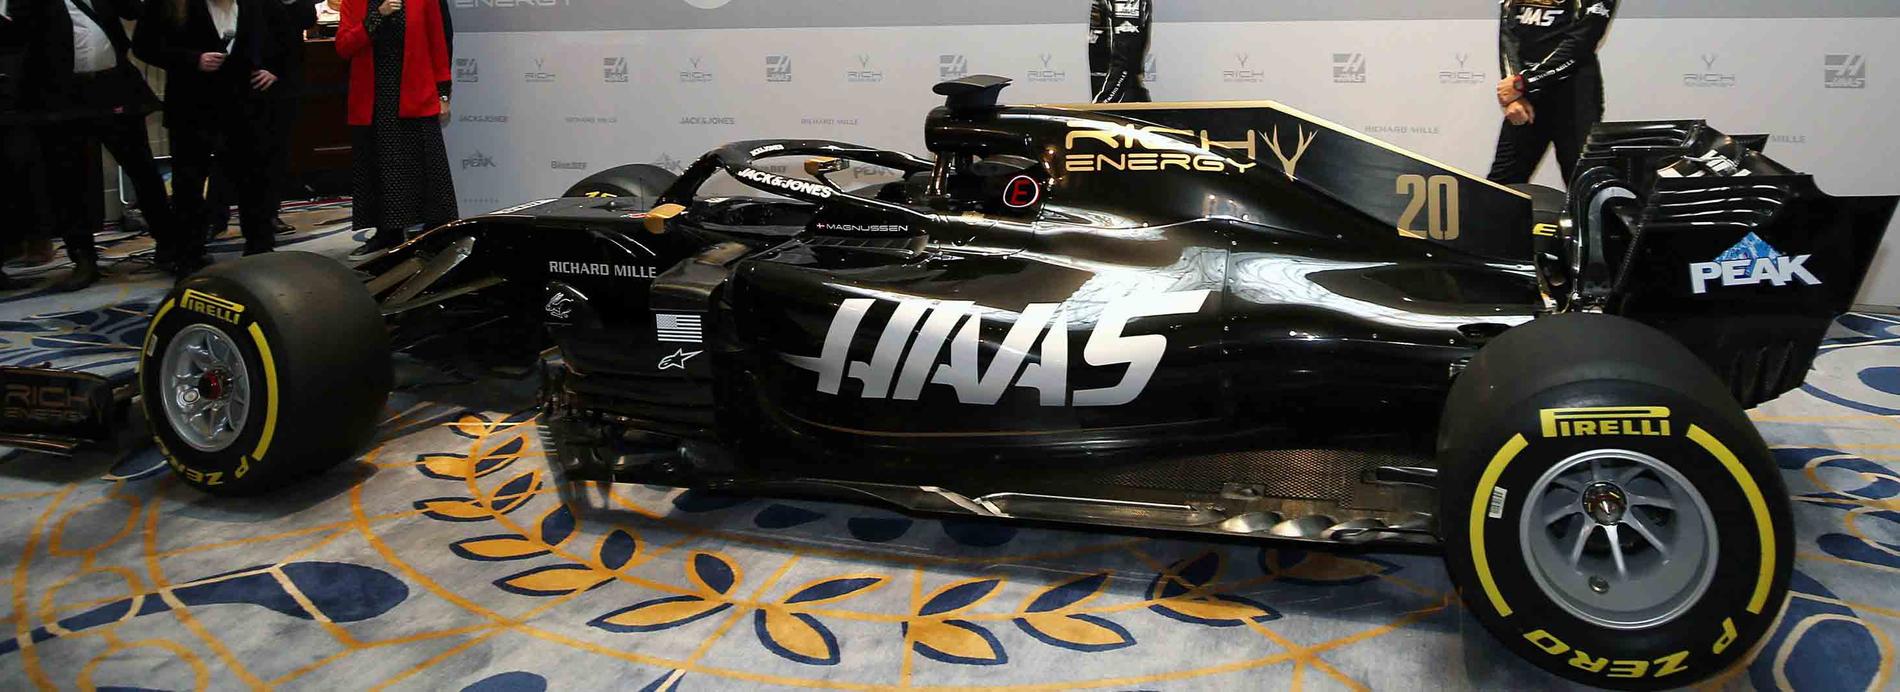 Haas har presenterat sin bil till Formel 1 2019.